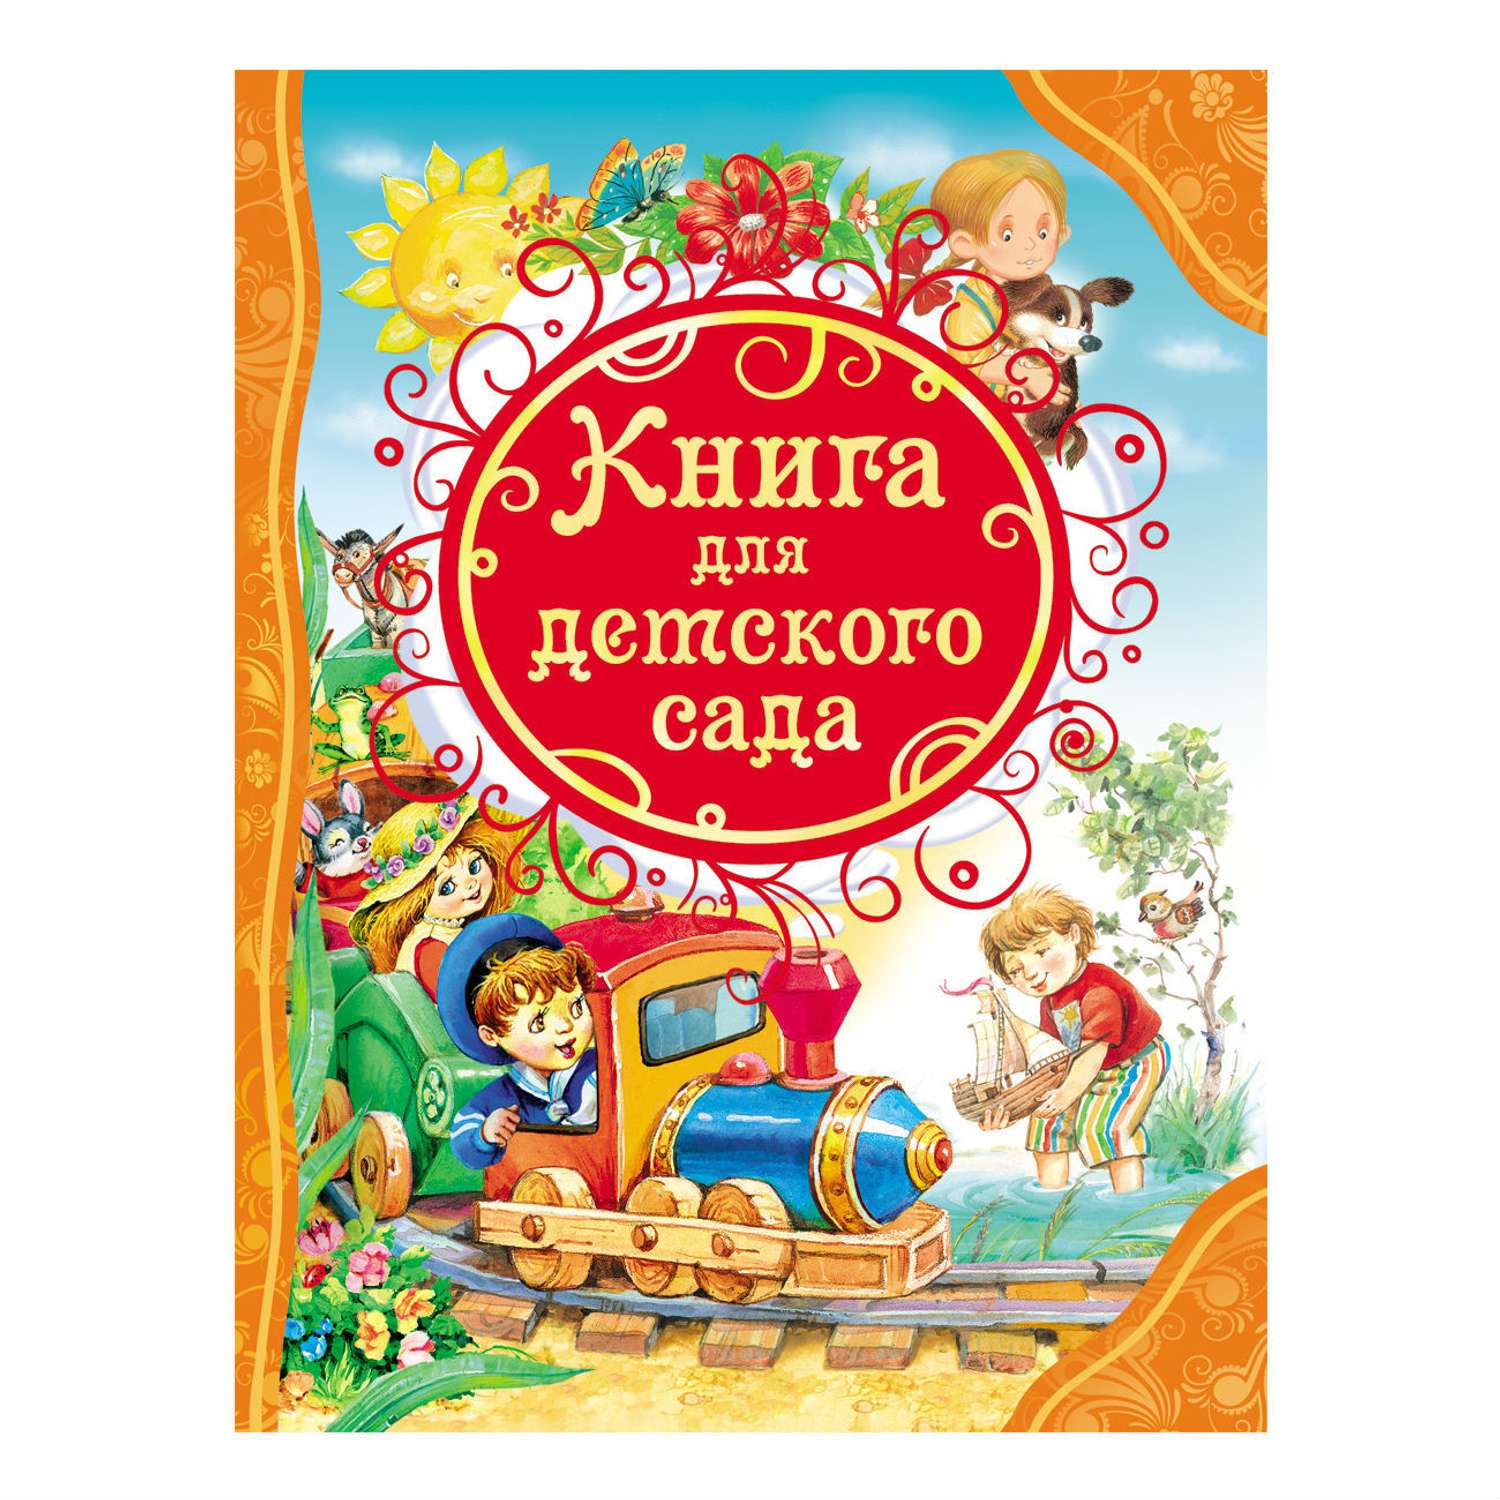 Книга Росмэн для детского сада (ВЛС) - фото 1